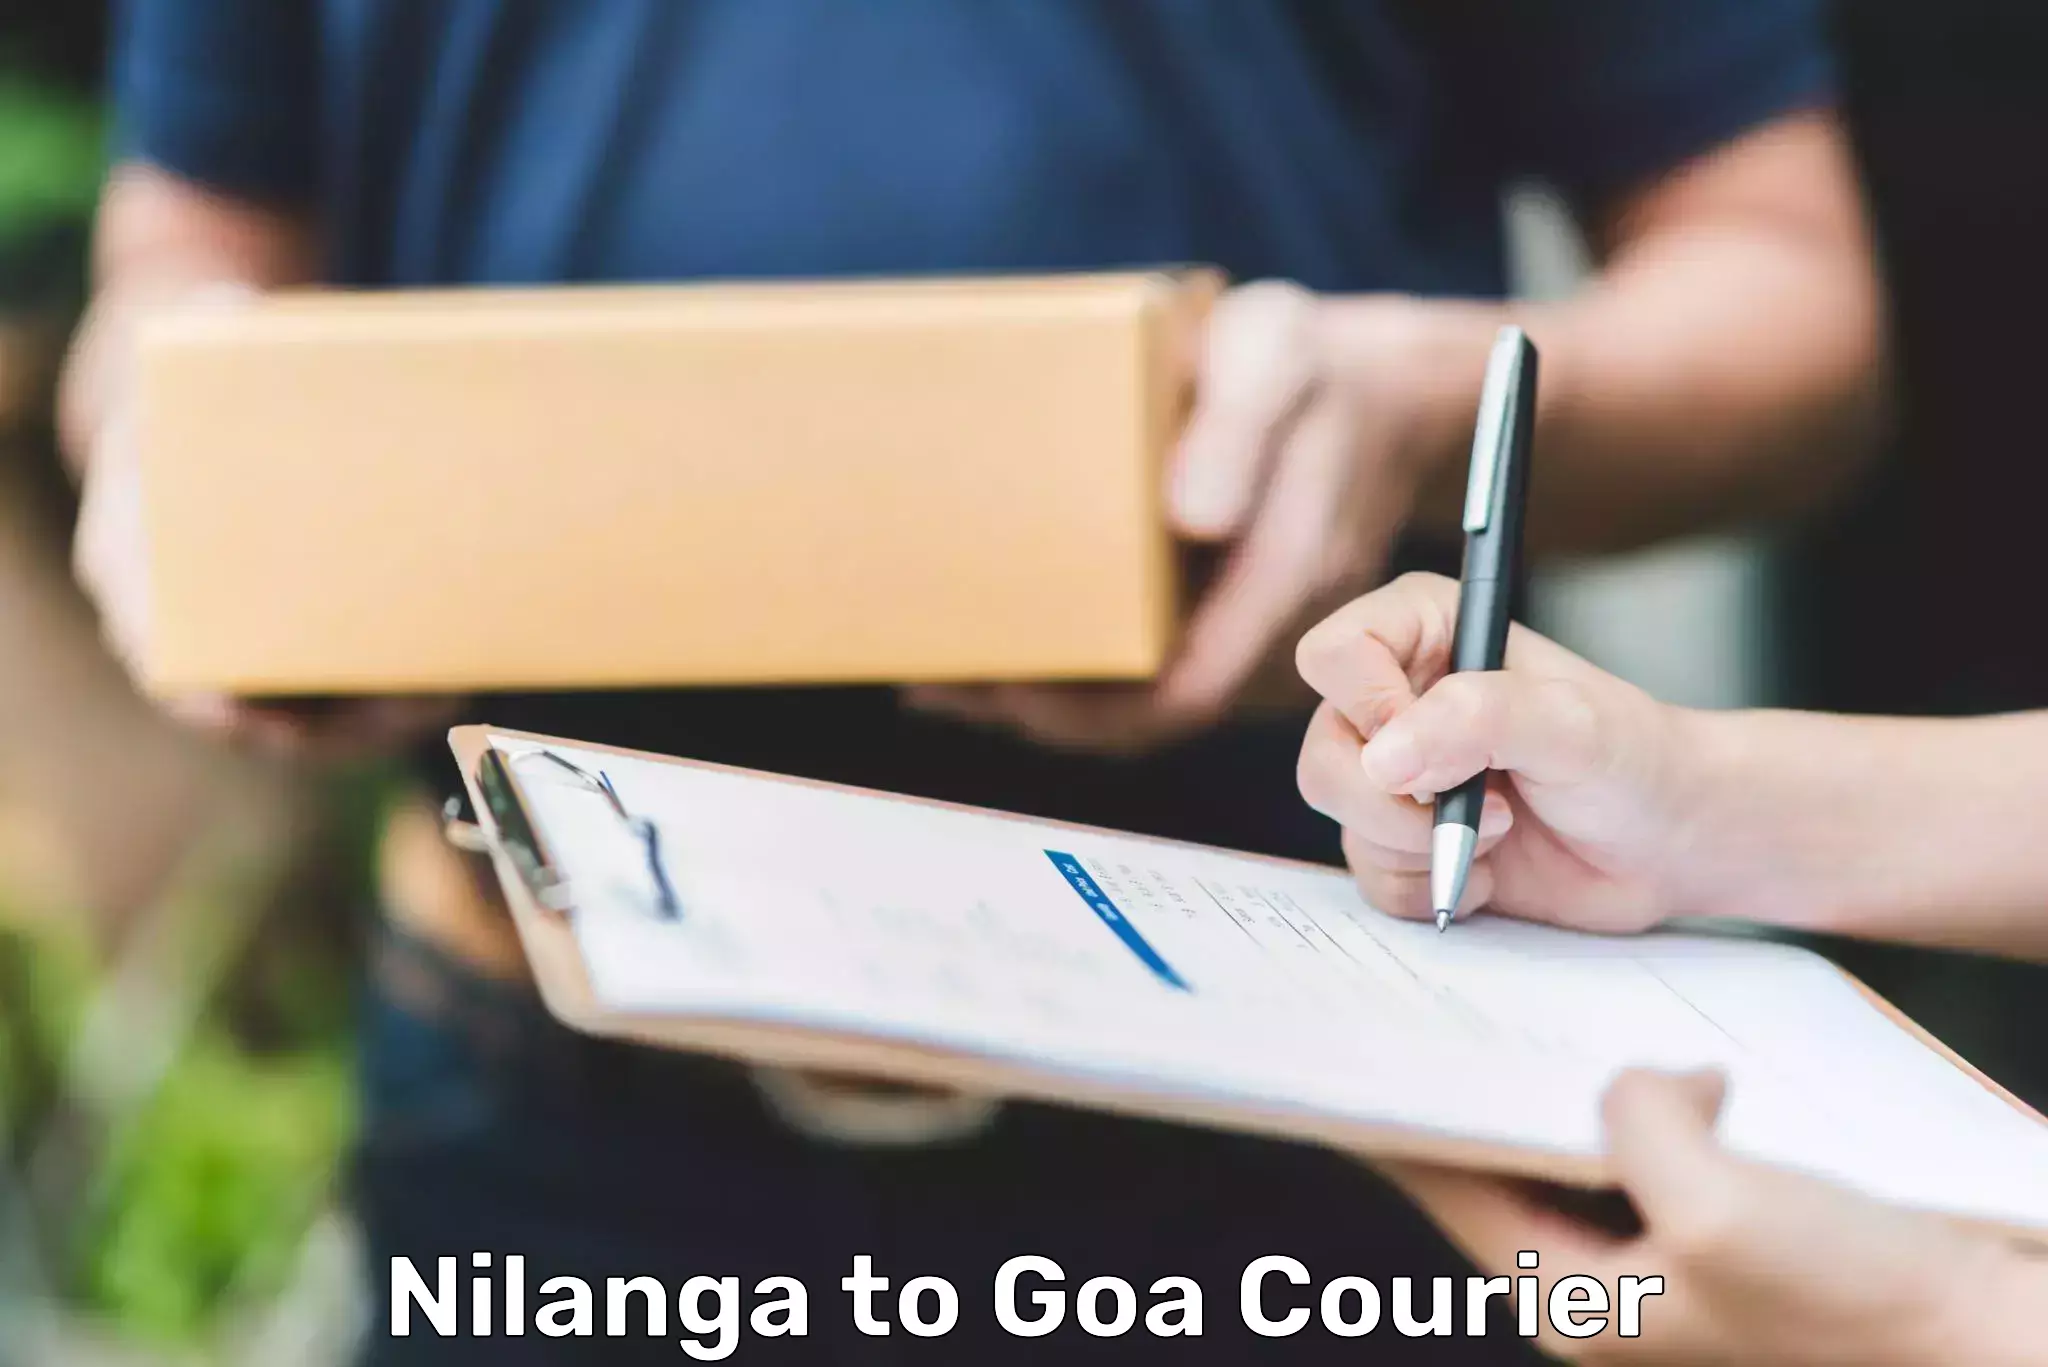 Global logistics network Nilanga to Goa